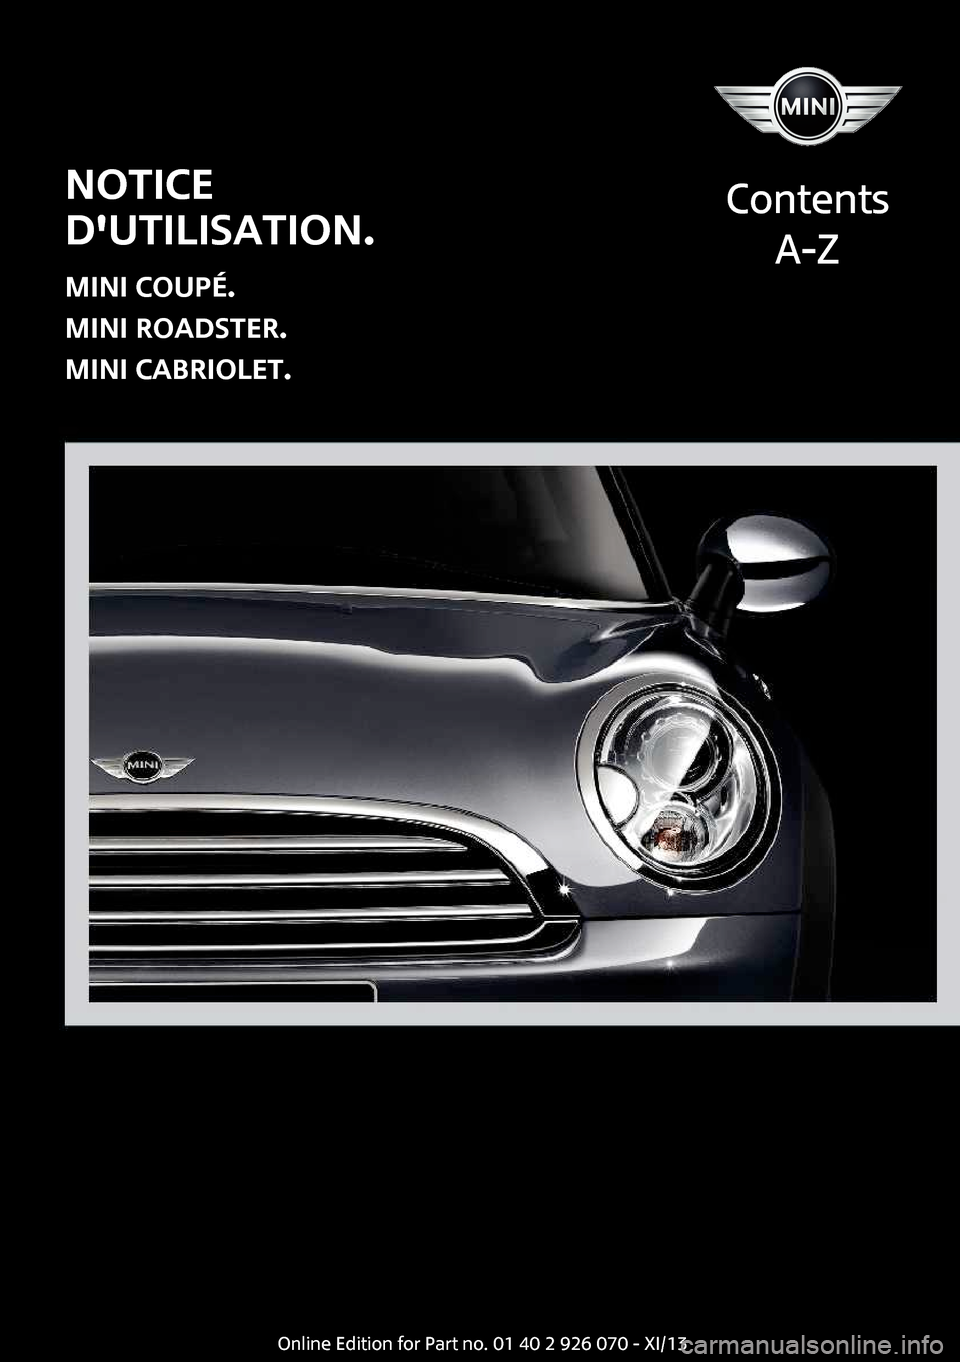 MINI Convertible 2013  Manuel du propriétaire (in French) Notice
dutilisation.
MINI Coupé.
MINI Roadster.
MINI Cabriolet.
Contents
A-ZOnline Edition for Part no. 01 40 2 911 499 - VI/13  